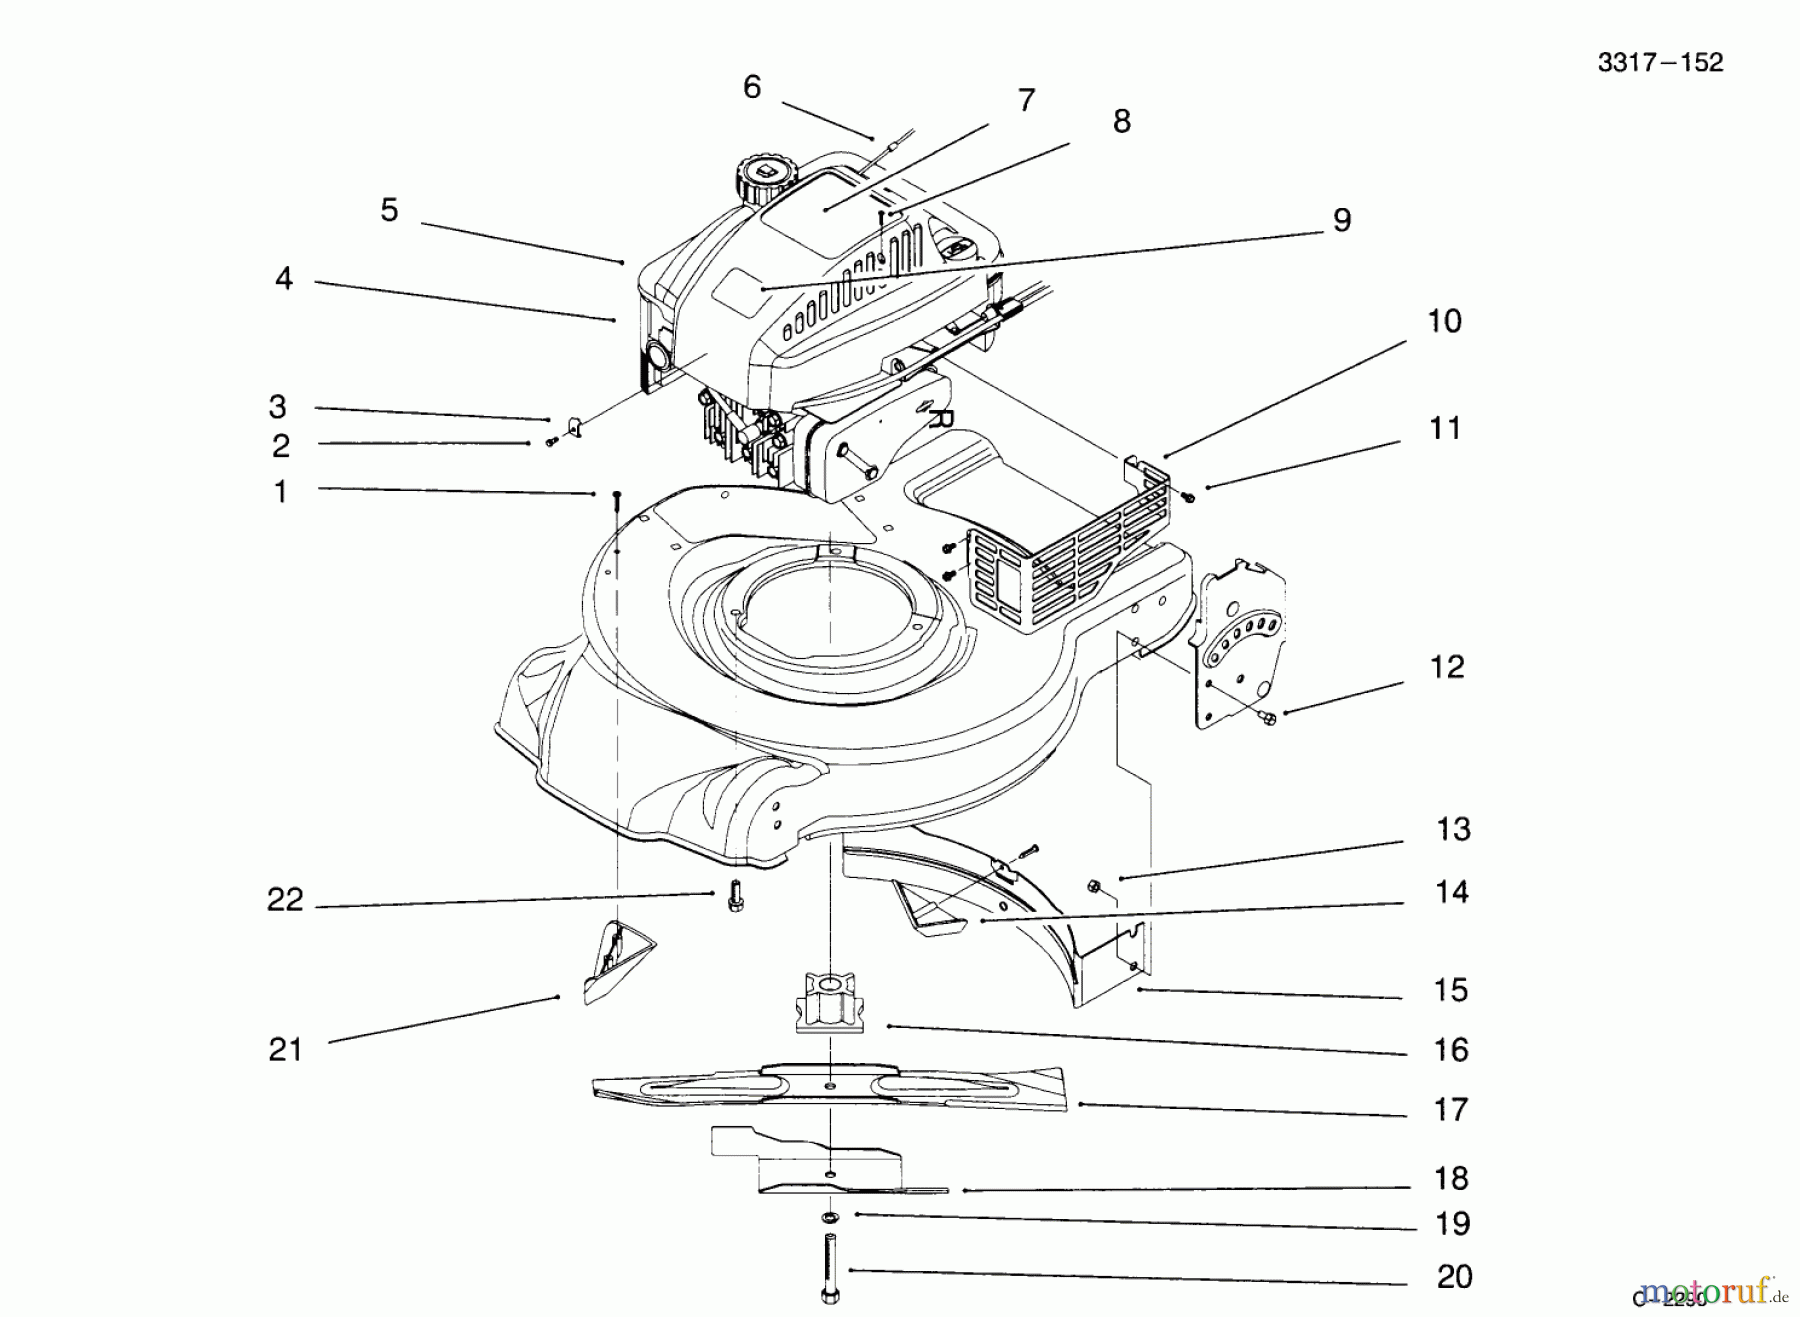  Toro Neu Mowers, Walk-Behind Seite 1 20441 - Toro Lawnmower, 1995 (5900001-5999999) ENGINE ASSEMBLY #2